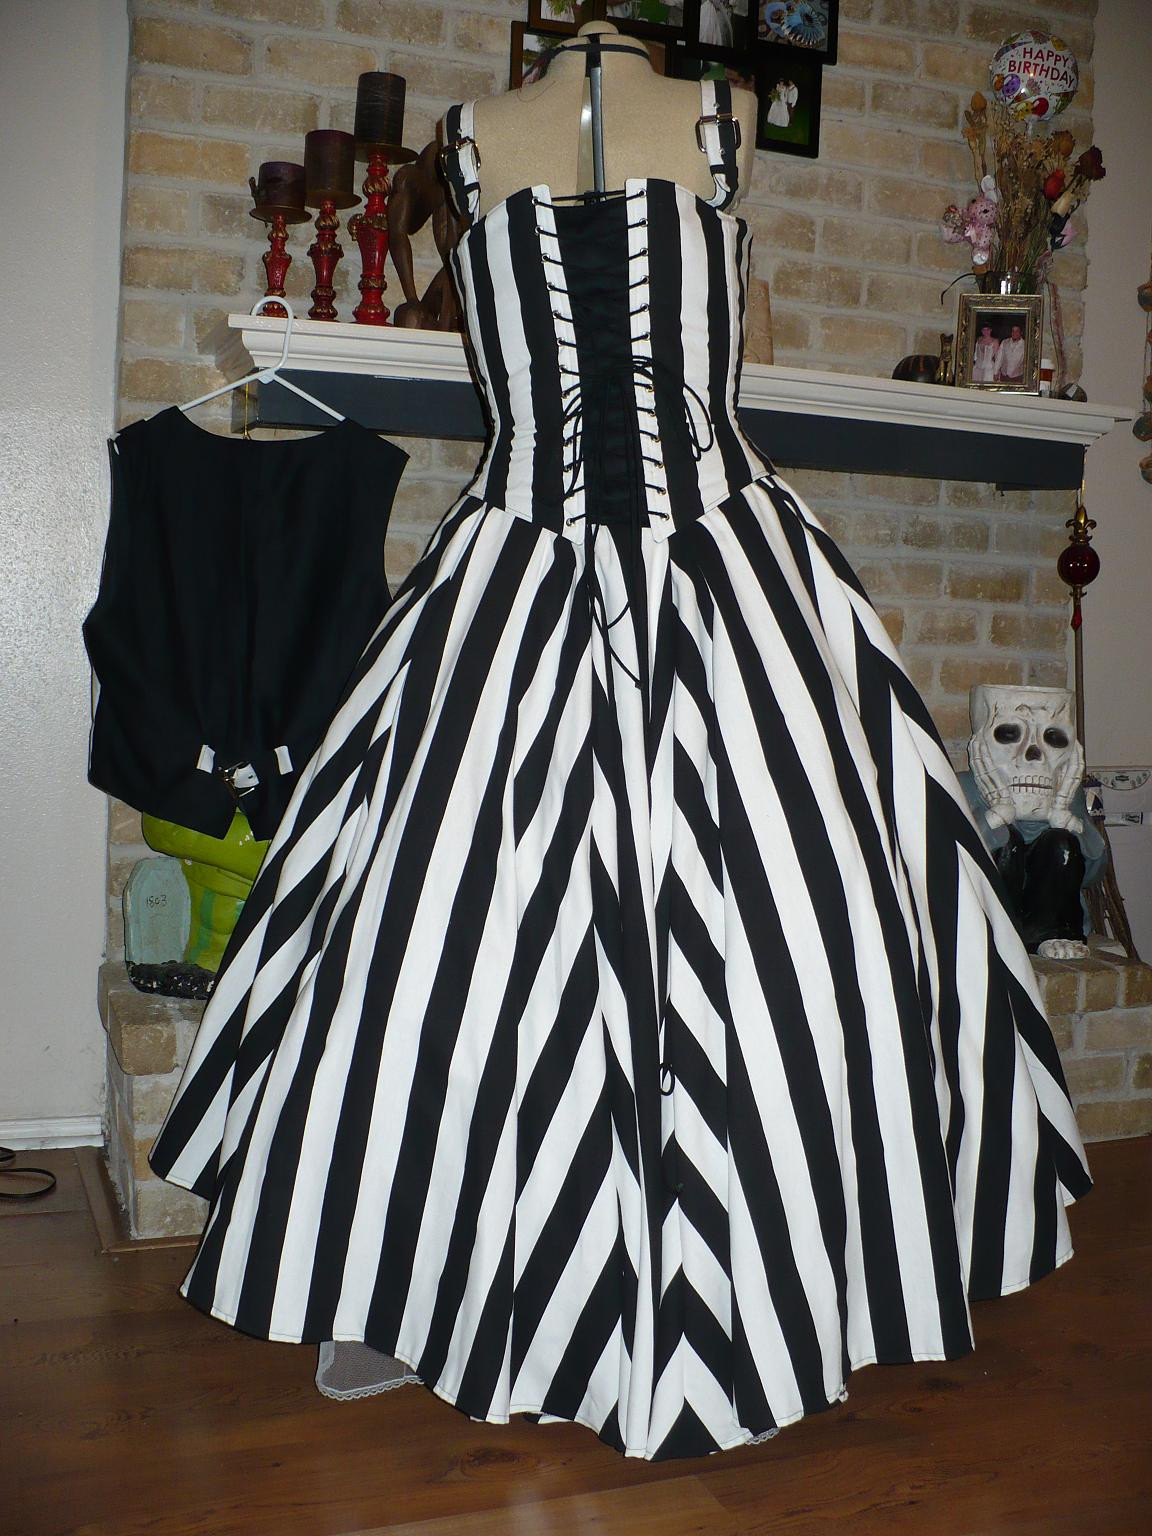 Zebra Wedding Dress
 Zebra Striped Wedding Dress Designs